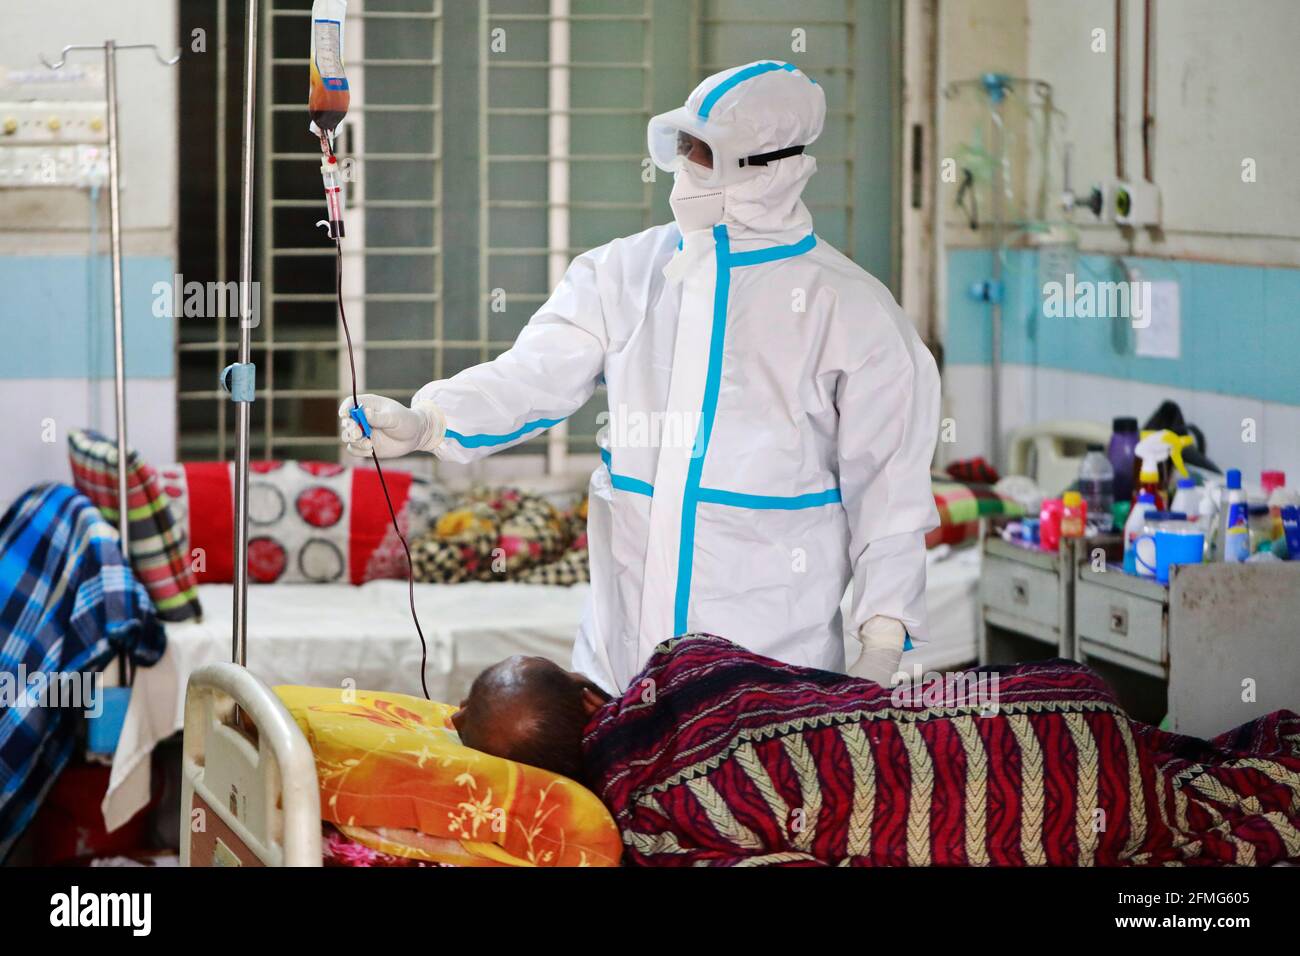 Dhaka, Bangladesch - 09. Mai 2021: Am Welttag der Krankenschwestern, während der Corona-Epidemie, riskieren Krankenschwestern ihr Leben, um jeden Tag Corona-Patienten zu dienen. Stockfoto